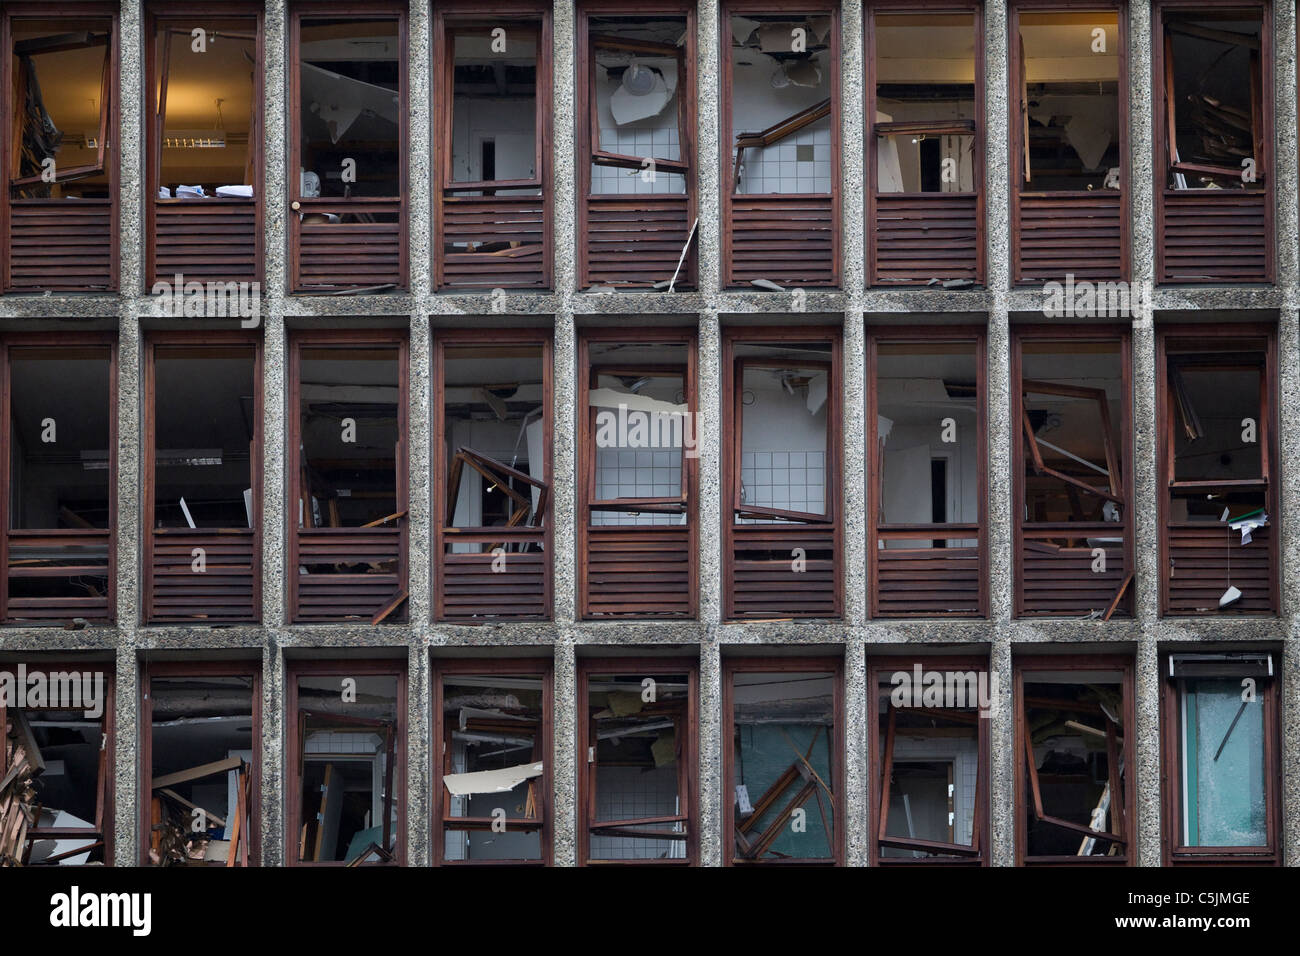 Destruction en surface politique d'Oslo où la terreur des bombes faites par Anders Behring Breivik a détruit des bâtiments.Photo:Jeff Gilbert Banque D'Images